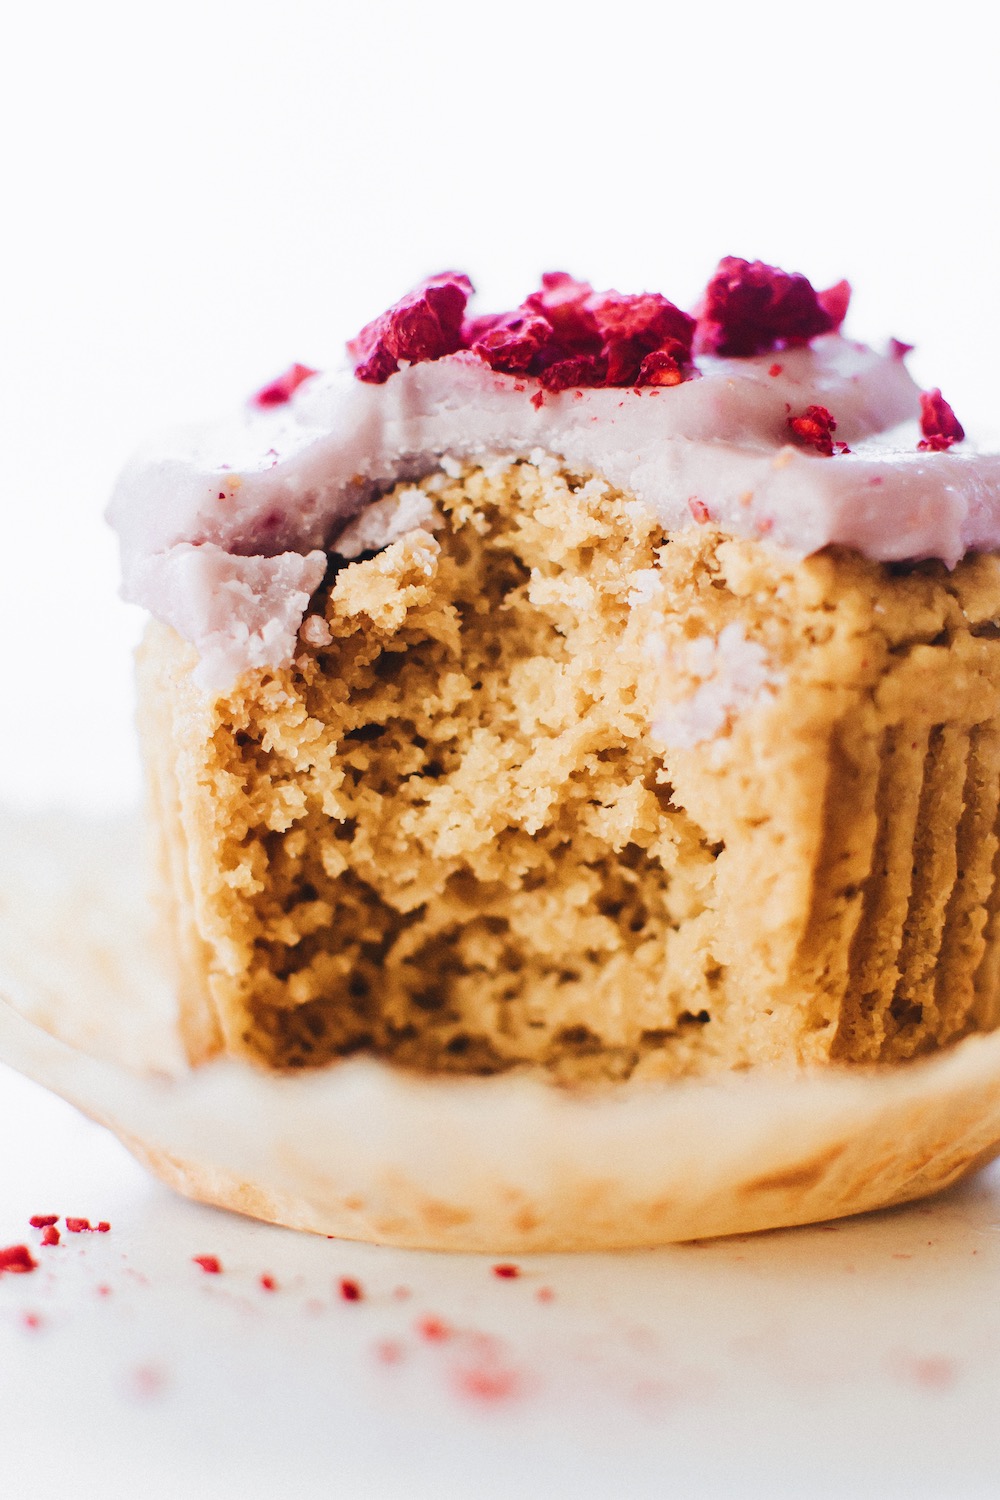 II. Benefits of Using Quinoa Flour in Cake Recipes